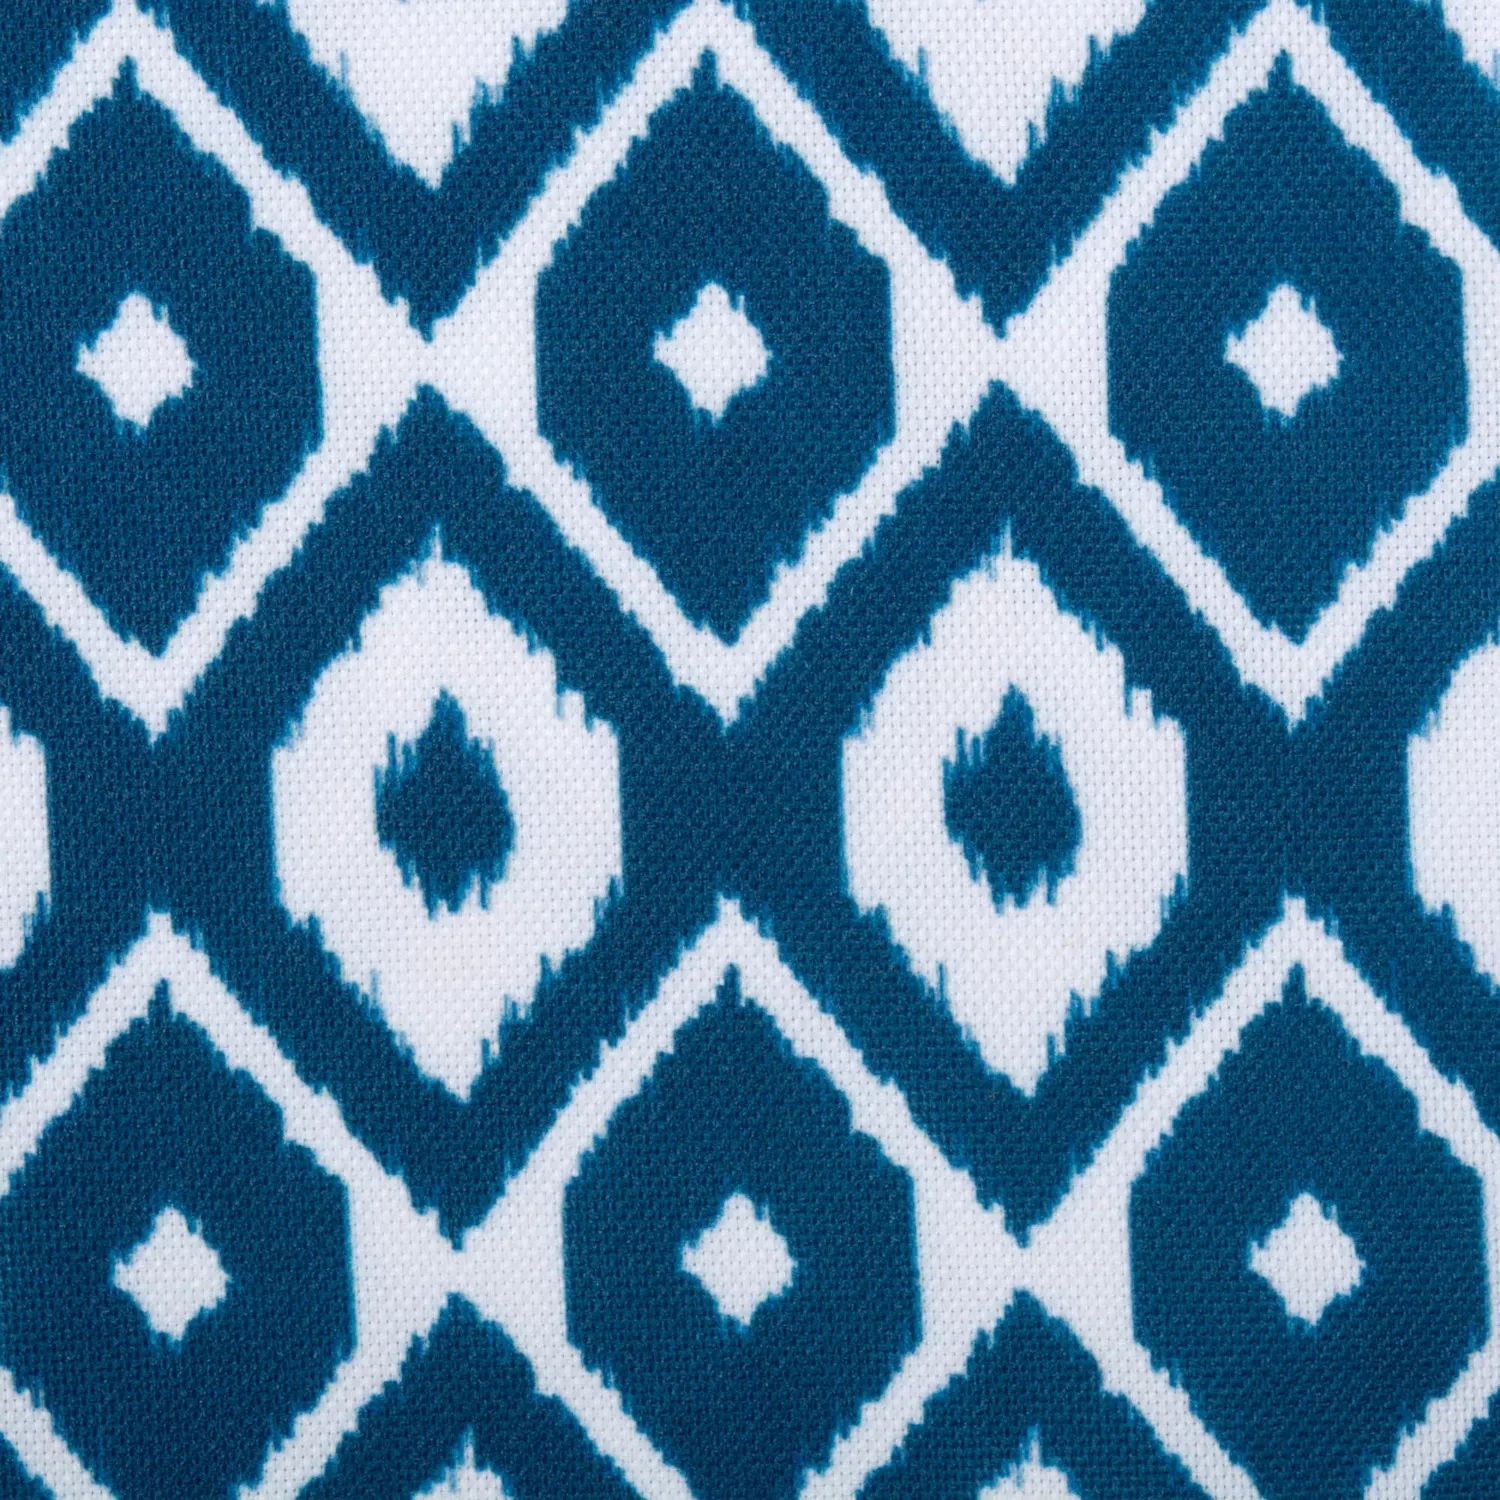 Прямоугольная скатерть с сине-белым рисунком икат размером 60 x 120 дюймов.